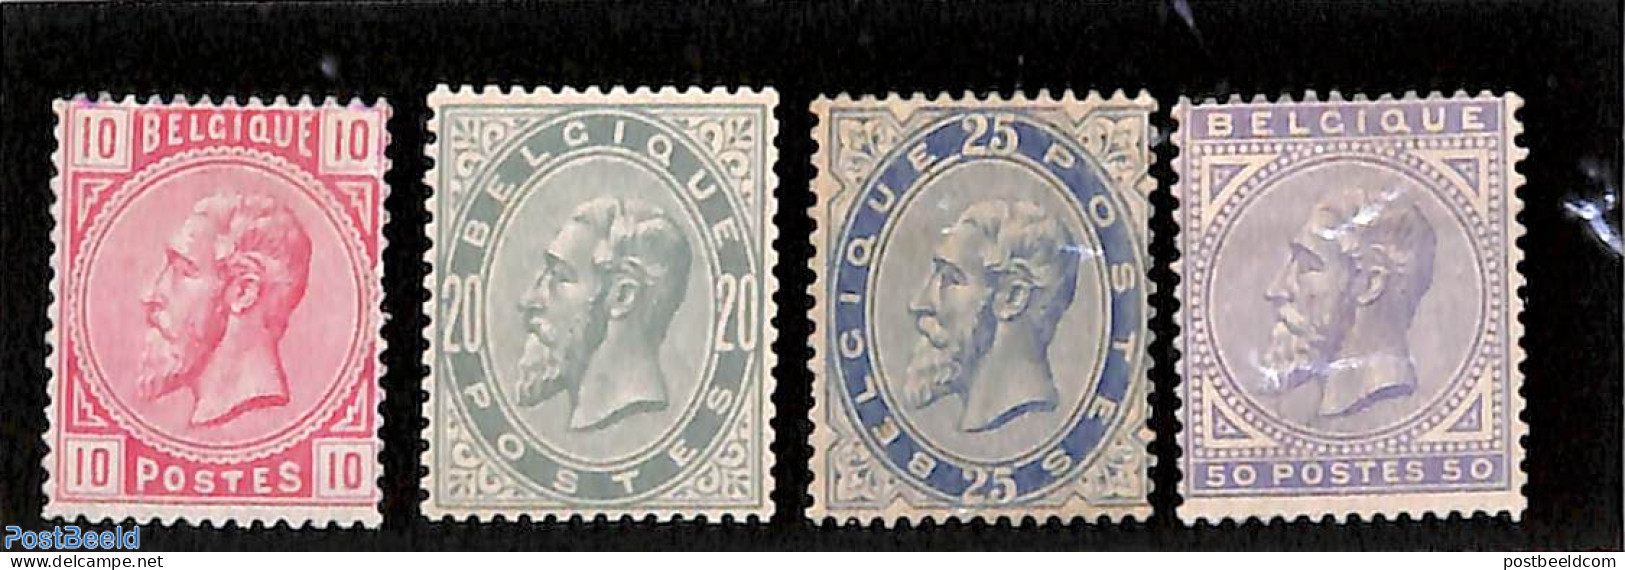 Belgium 1883 Definitives, King Leopold II 4v, Unused (hinged) - Unused Stamps